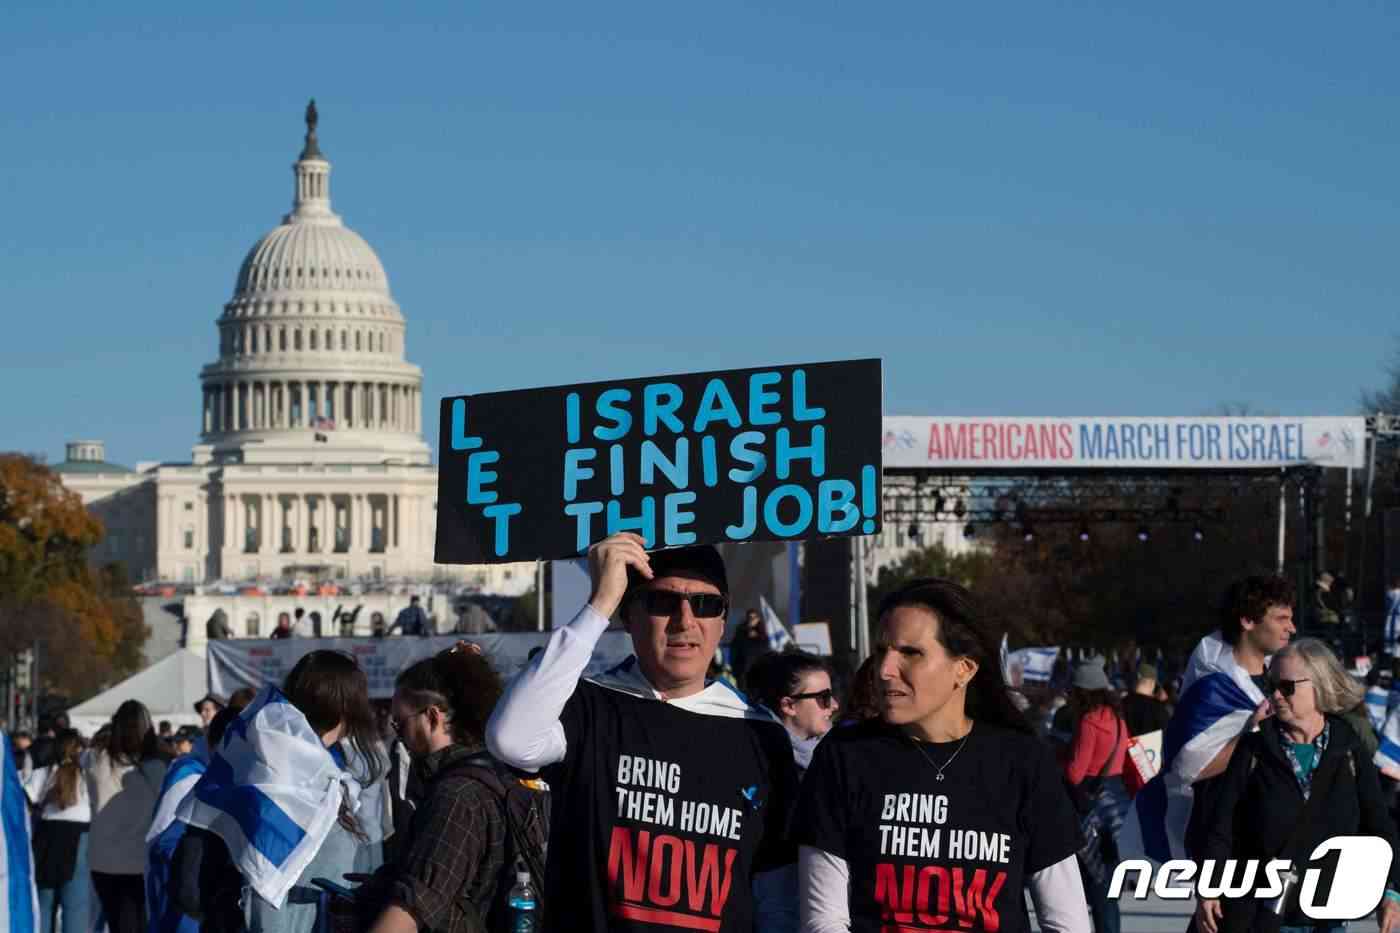 14일(현지시간) 미국 워싱턴 국회의사당 앞에 모인 집회 참가자들이 반유대주의를 비판하며 팔레스타인 무장 정파 하마스에 붙잡힌 이스라엘인 인질 석방을 촉구하고 있다. 집회자의 티셔츠에는 